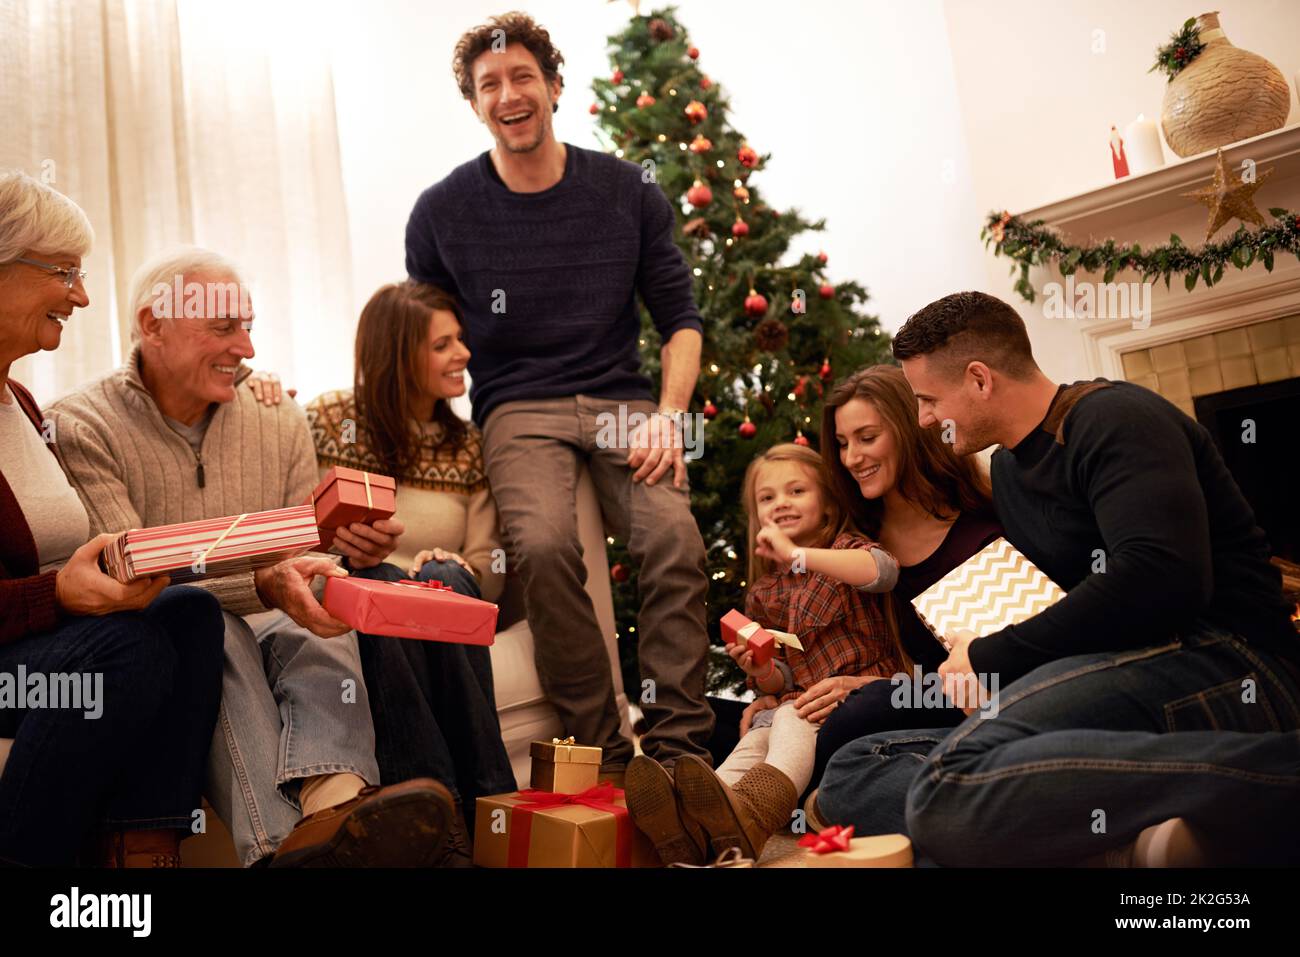 Die Familienzeit ist das größte Geschenk von allen. Aufnahme einer Familie mit mehreren Generationen, die zu Weihnachten Geschenke austauscht. Stockfoto